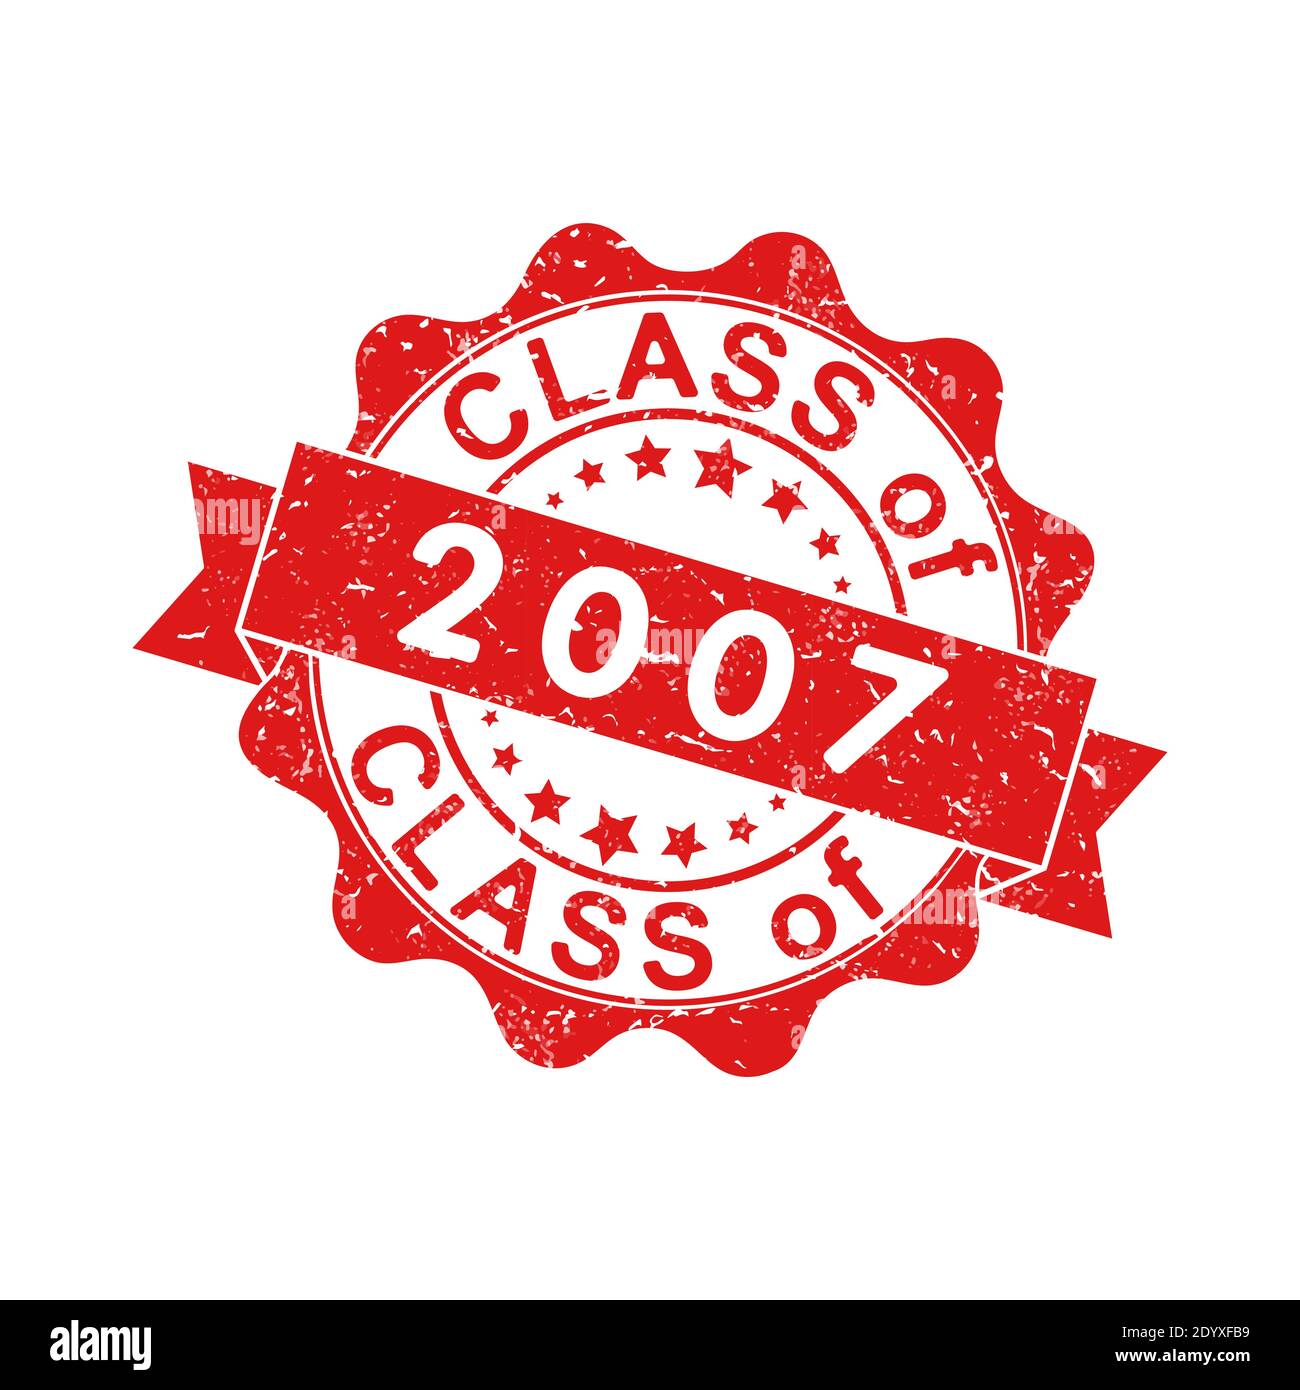 Ein Eindruck einer alten abgenutzten Briefmarke mit der Inschrift KLASSE von 2007. Vektor-Illustration für thematische Gestaltung, Alumni-Treffen, Diplome und Zertifikat Stock Vektor